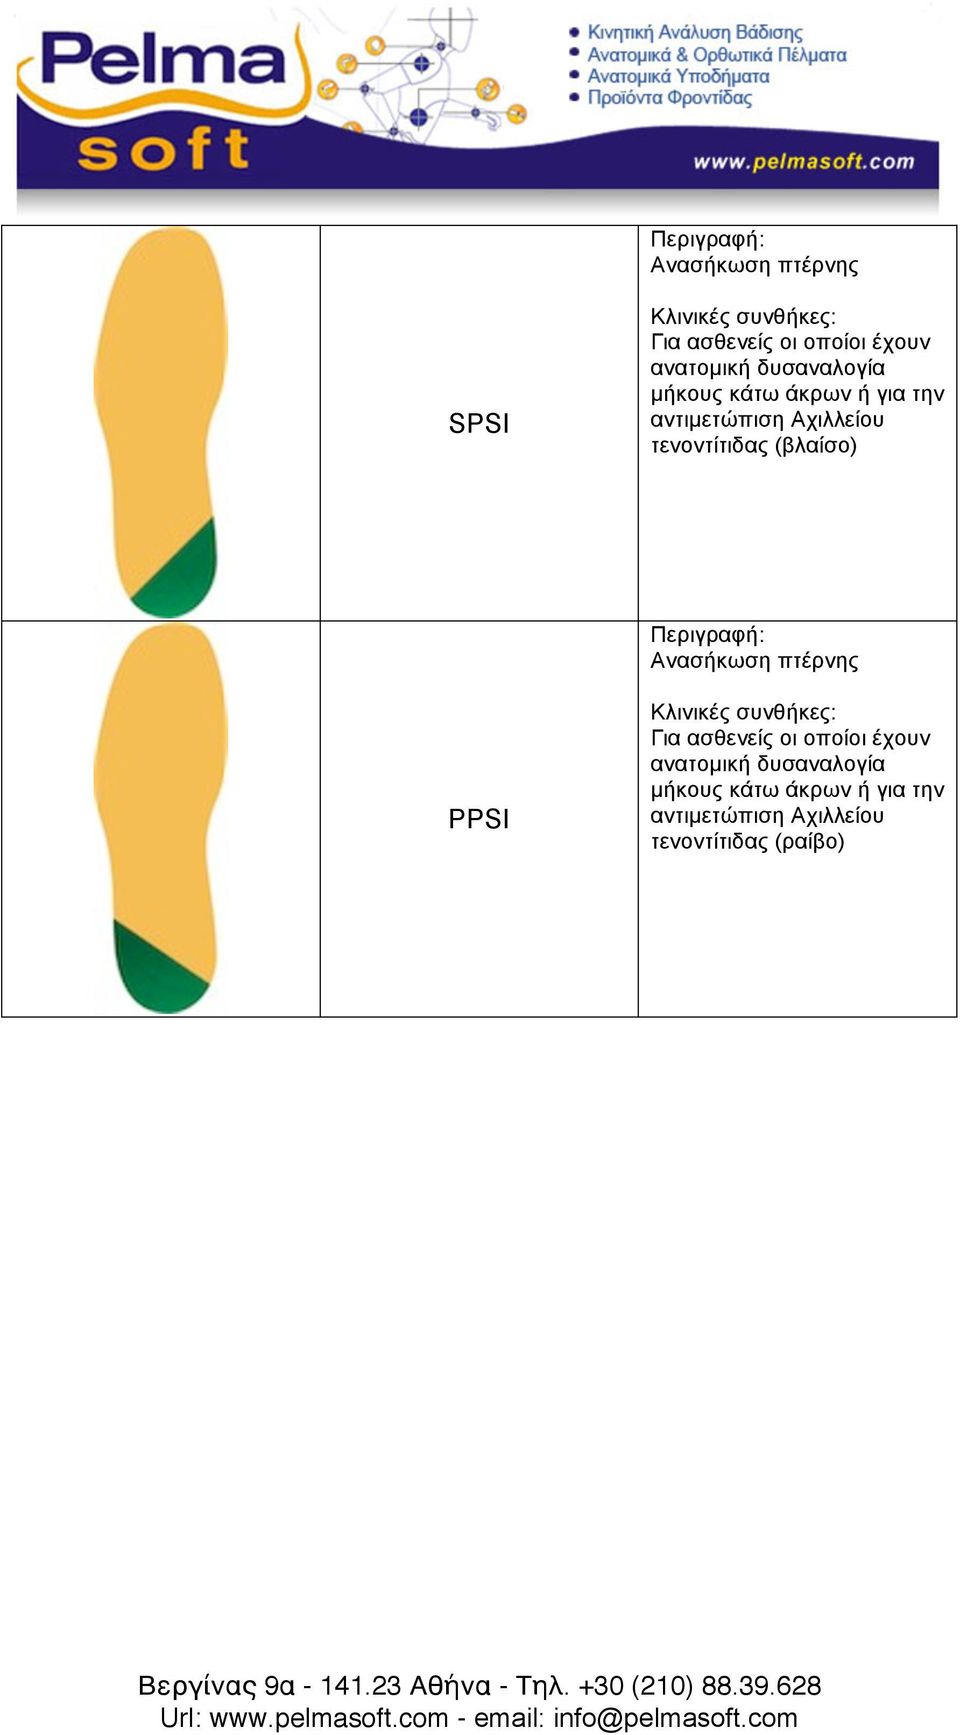 τενοντίτιδας (βλαίσο) Ανασήκωση πτέρνης PPSI Για ασθενείς οι οποίοι